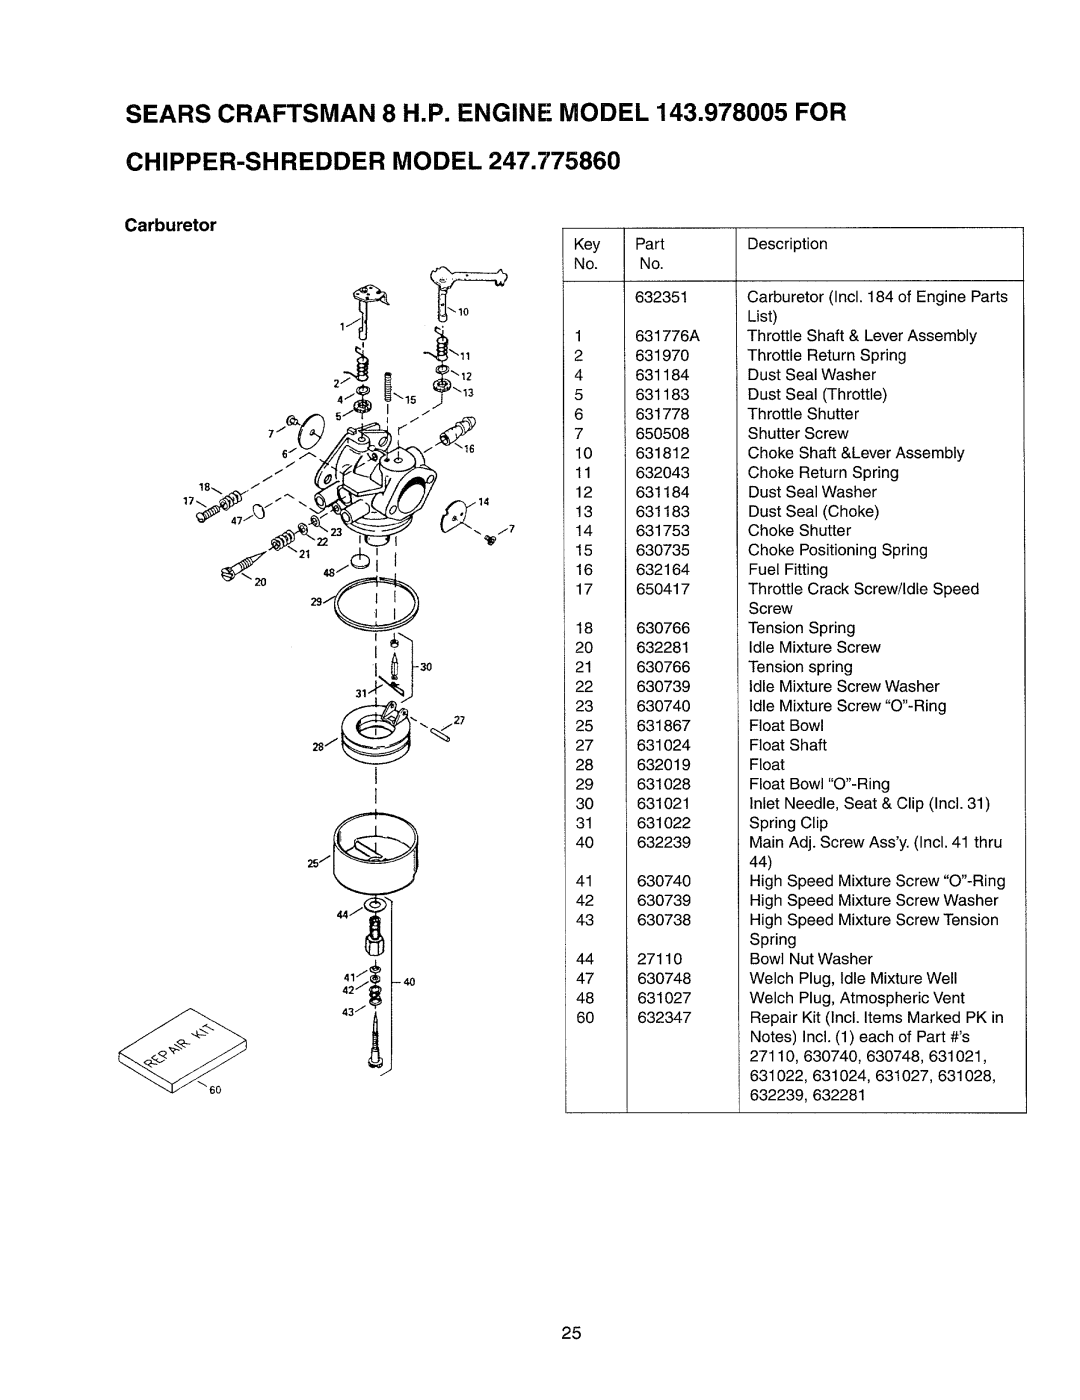 Craftsman 247.77586 manual Sears Craftsman Chipper-Shredder, 8 H.P. ENGINE MODEL 143.978005 FOR MODEL, Carburetor 